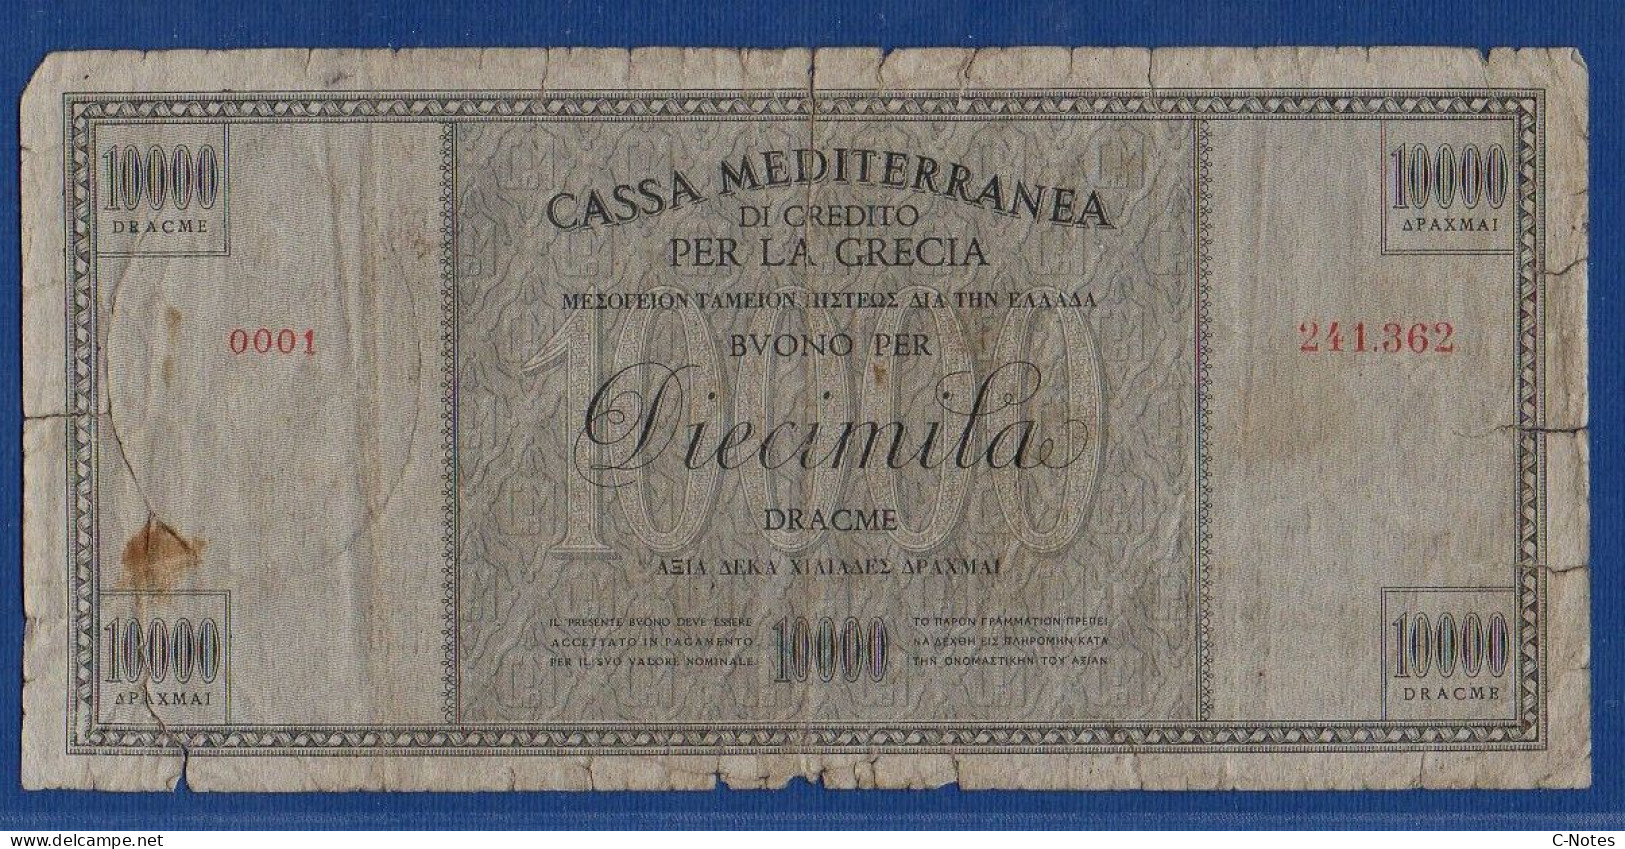 GREECE - Cassa Mediterranea Di Credito - P.M8 – 10000 DRACME ND 1941 - CIRCULATED - SERIE 0001 241.362 - Ocupación Italiana Egenea